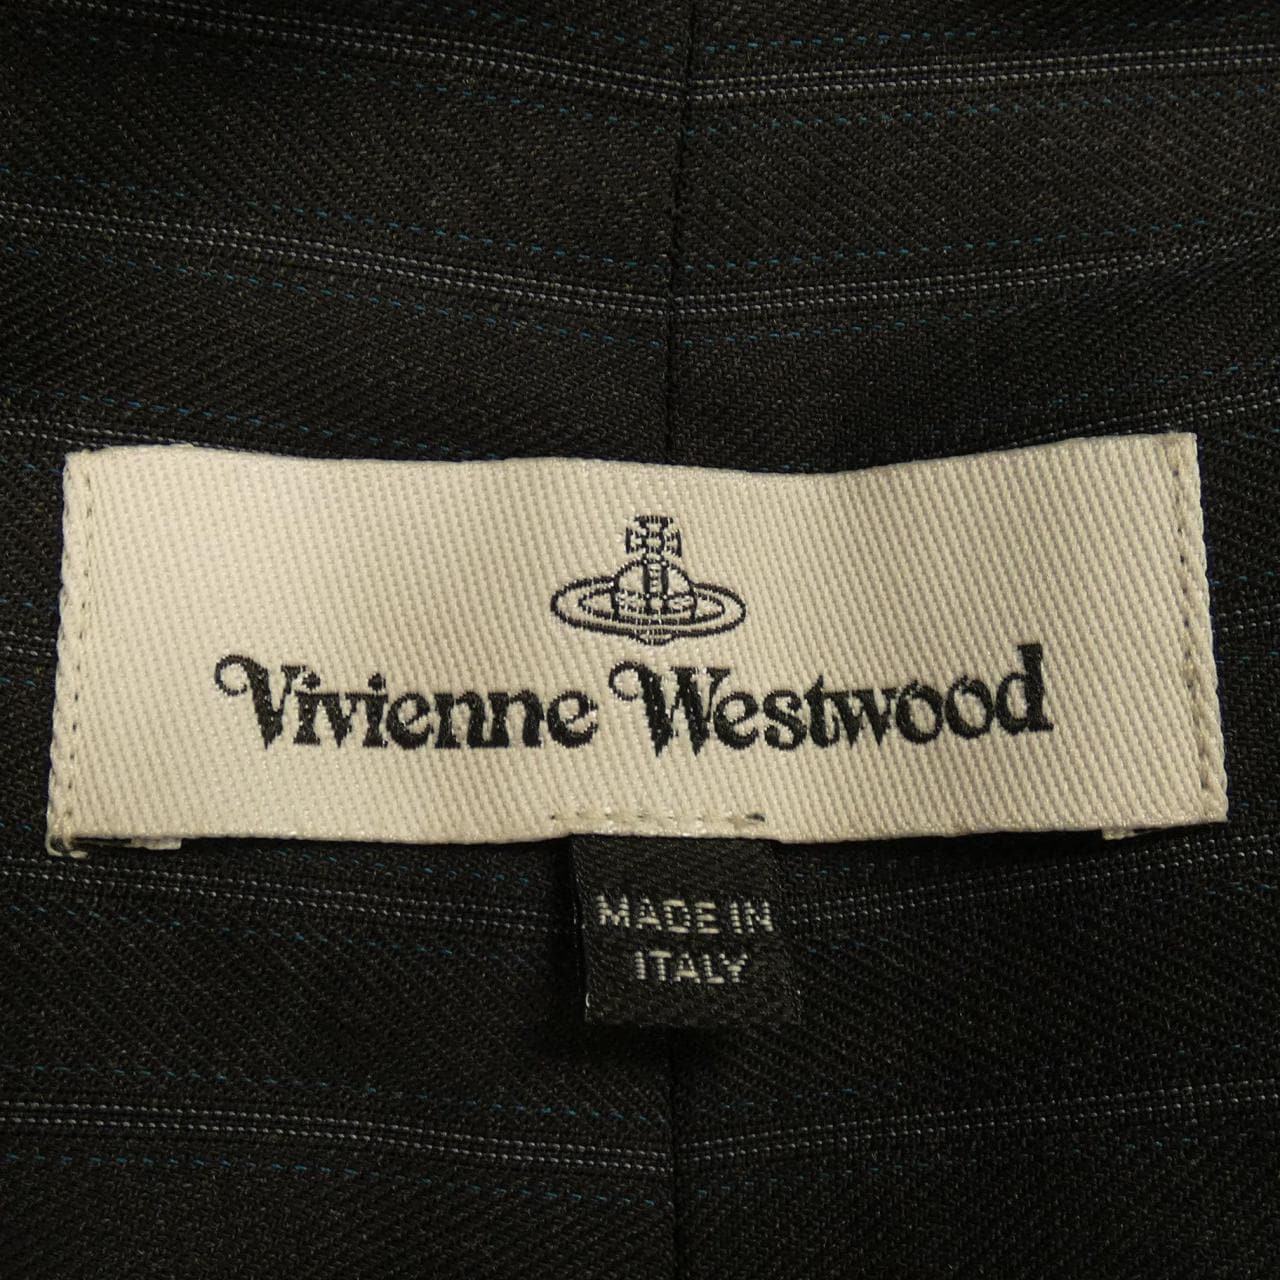 Vivienne Westwood Vivienne Westwood 褲子